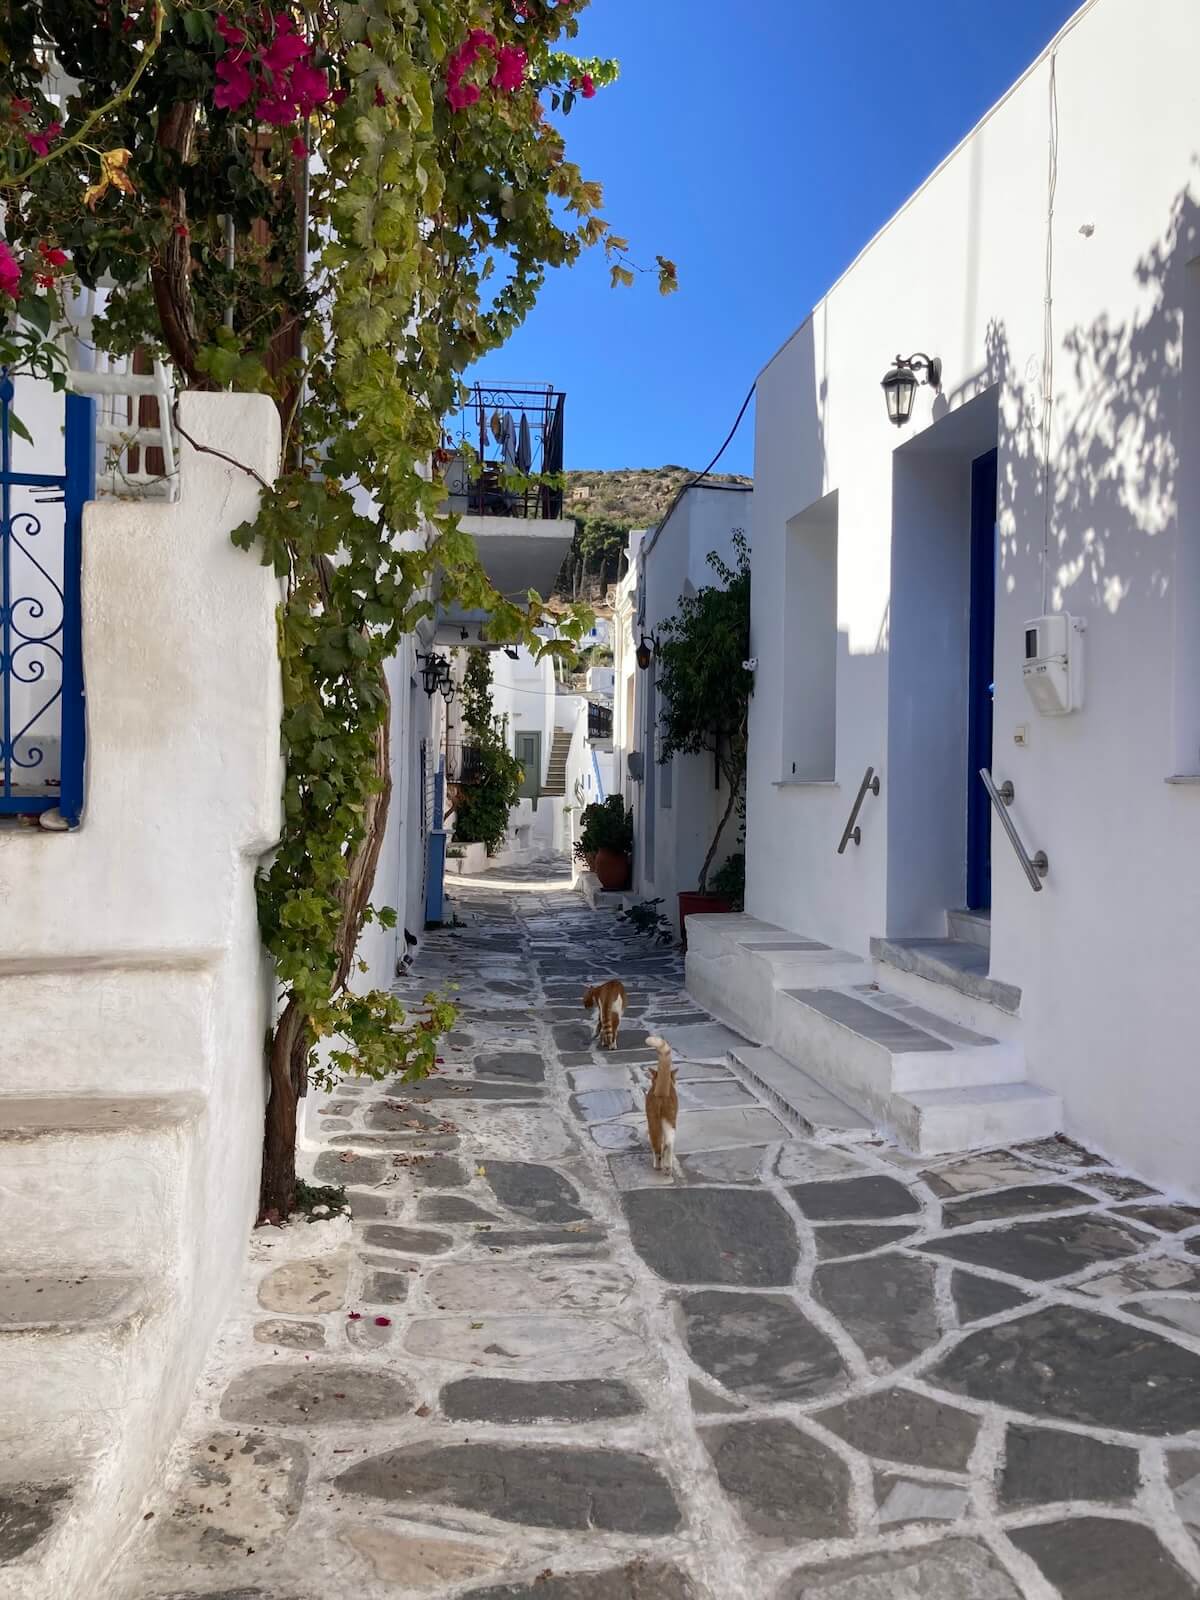 ギリシャ・パロス島の街中を歩く猫たち